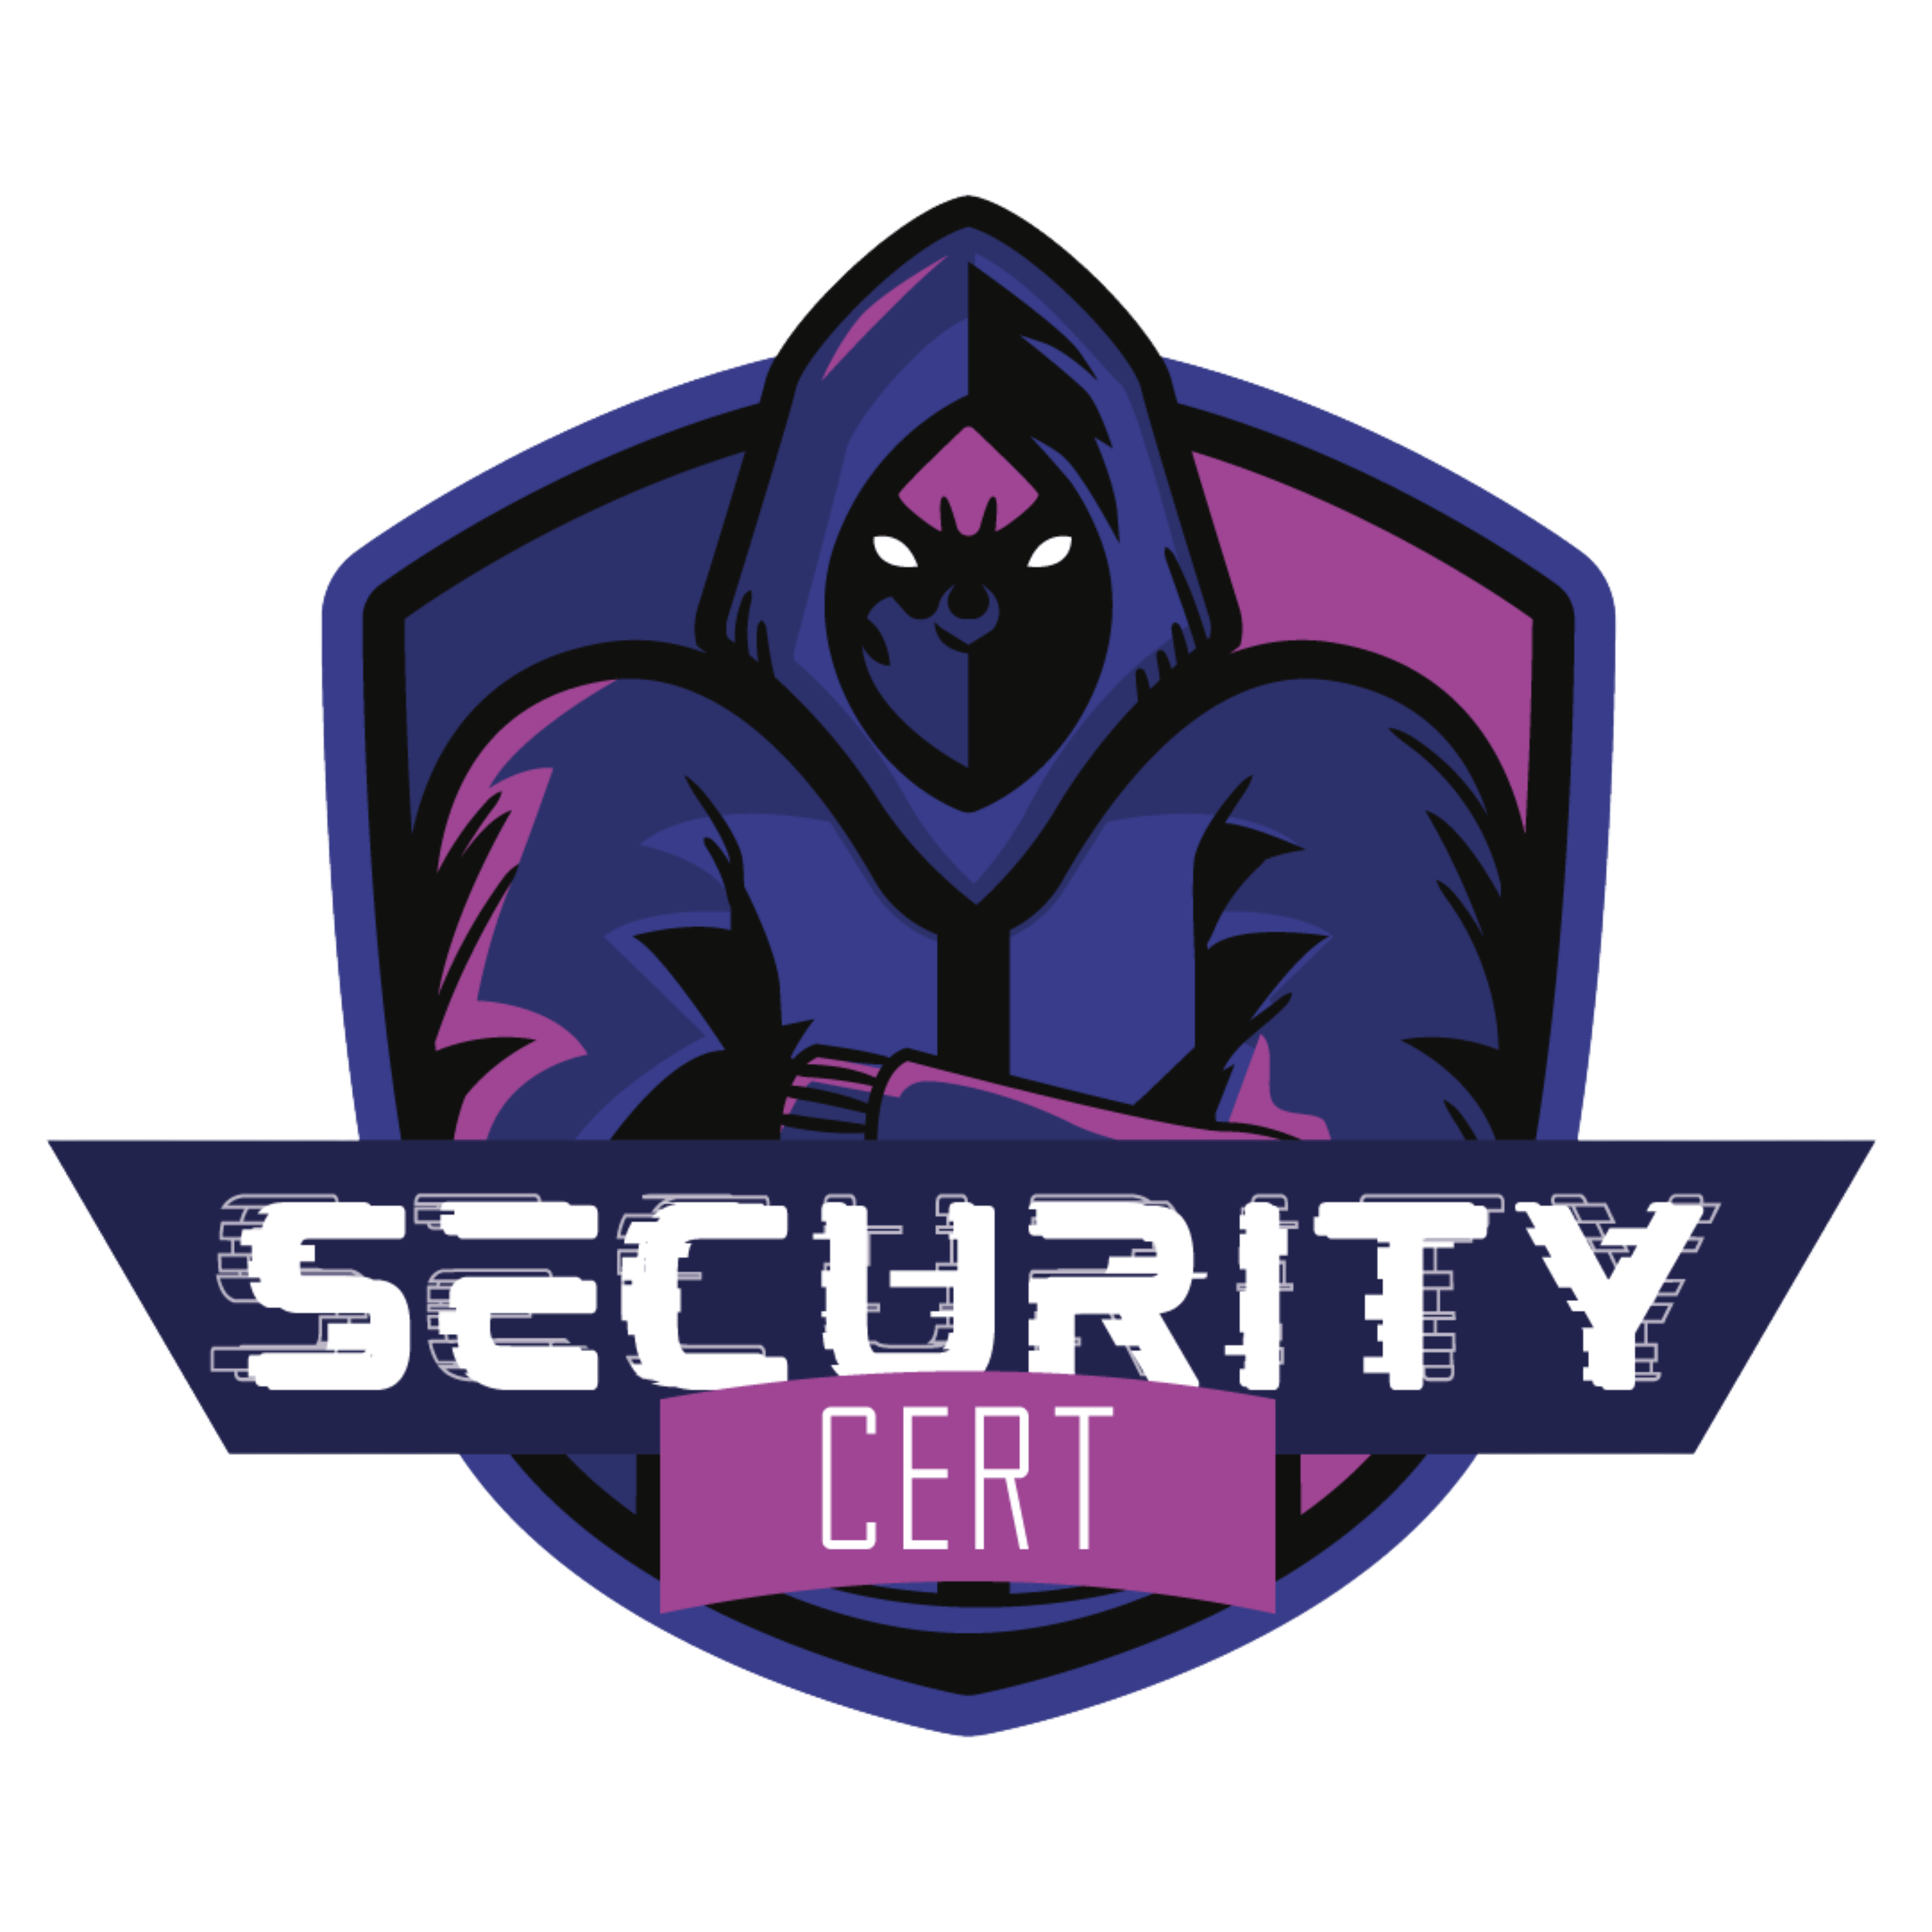 SecurityCert logo